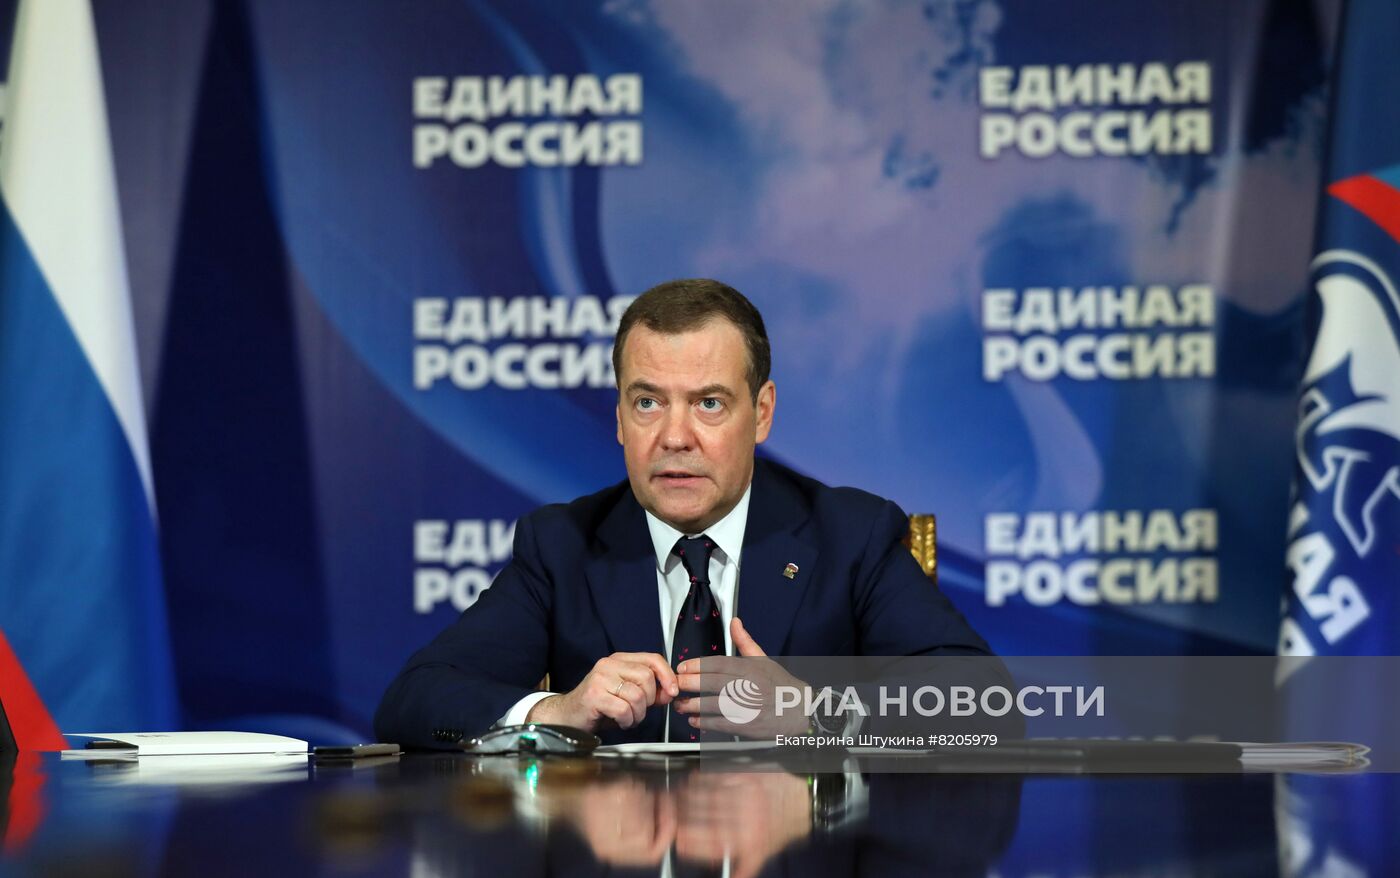 Председатель партии "Единая Россия" Д. Медведев провел прием граждан в партию